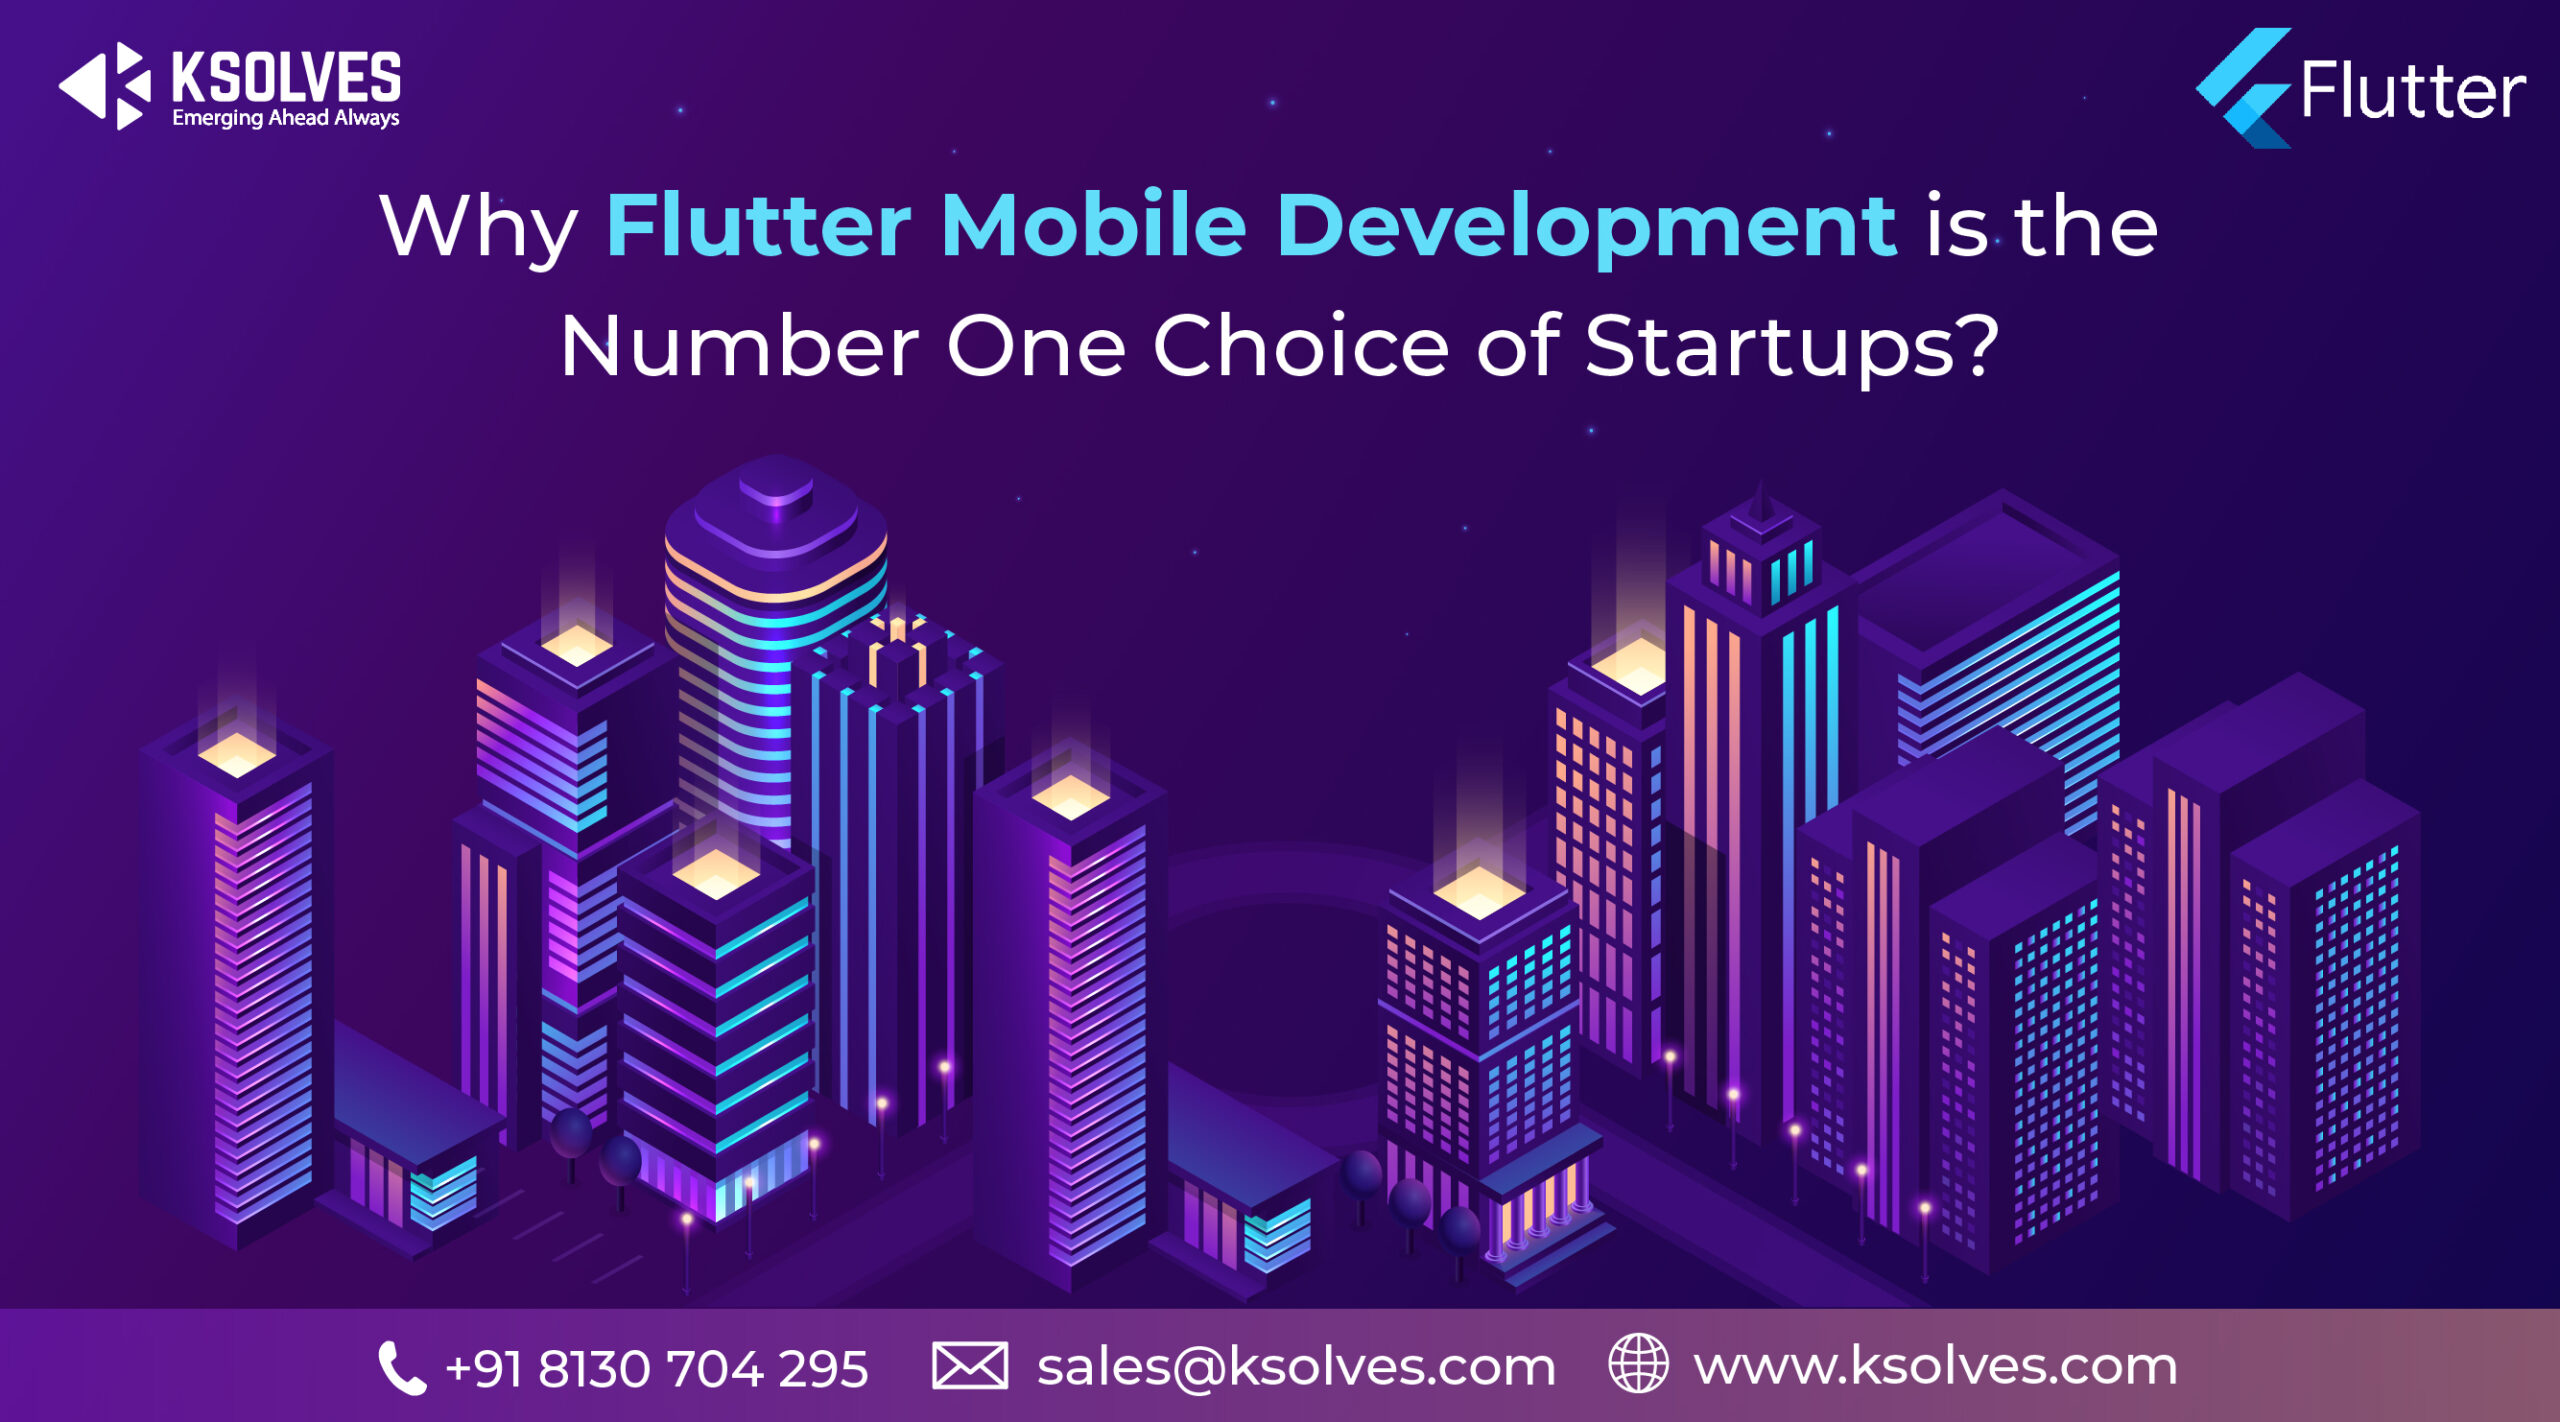 flutter mobile app development